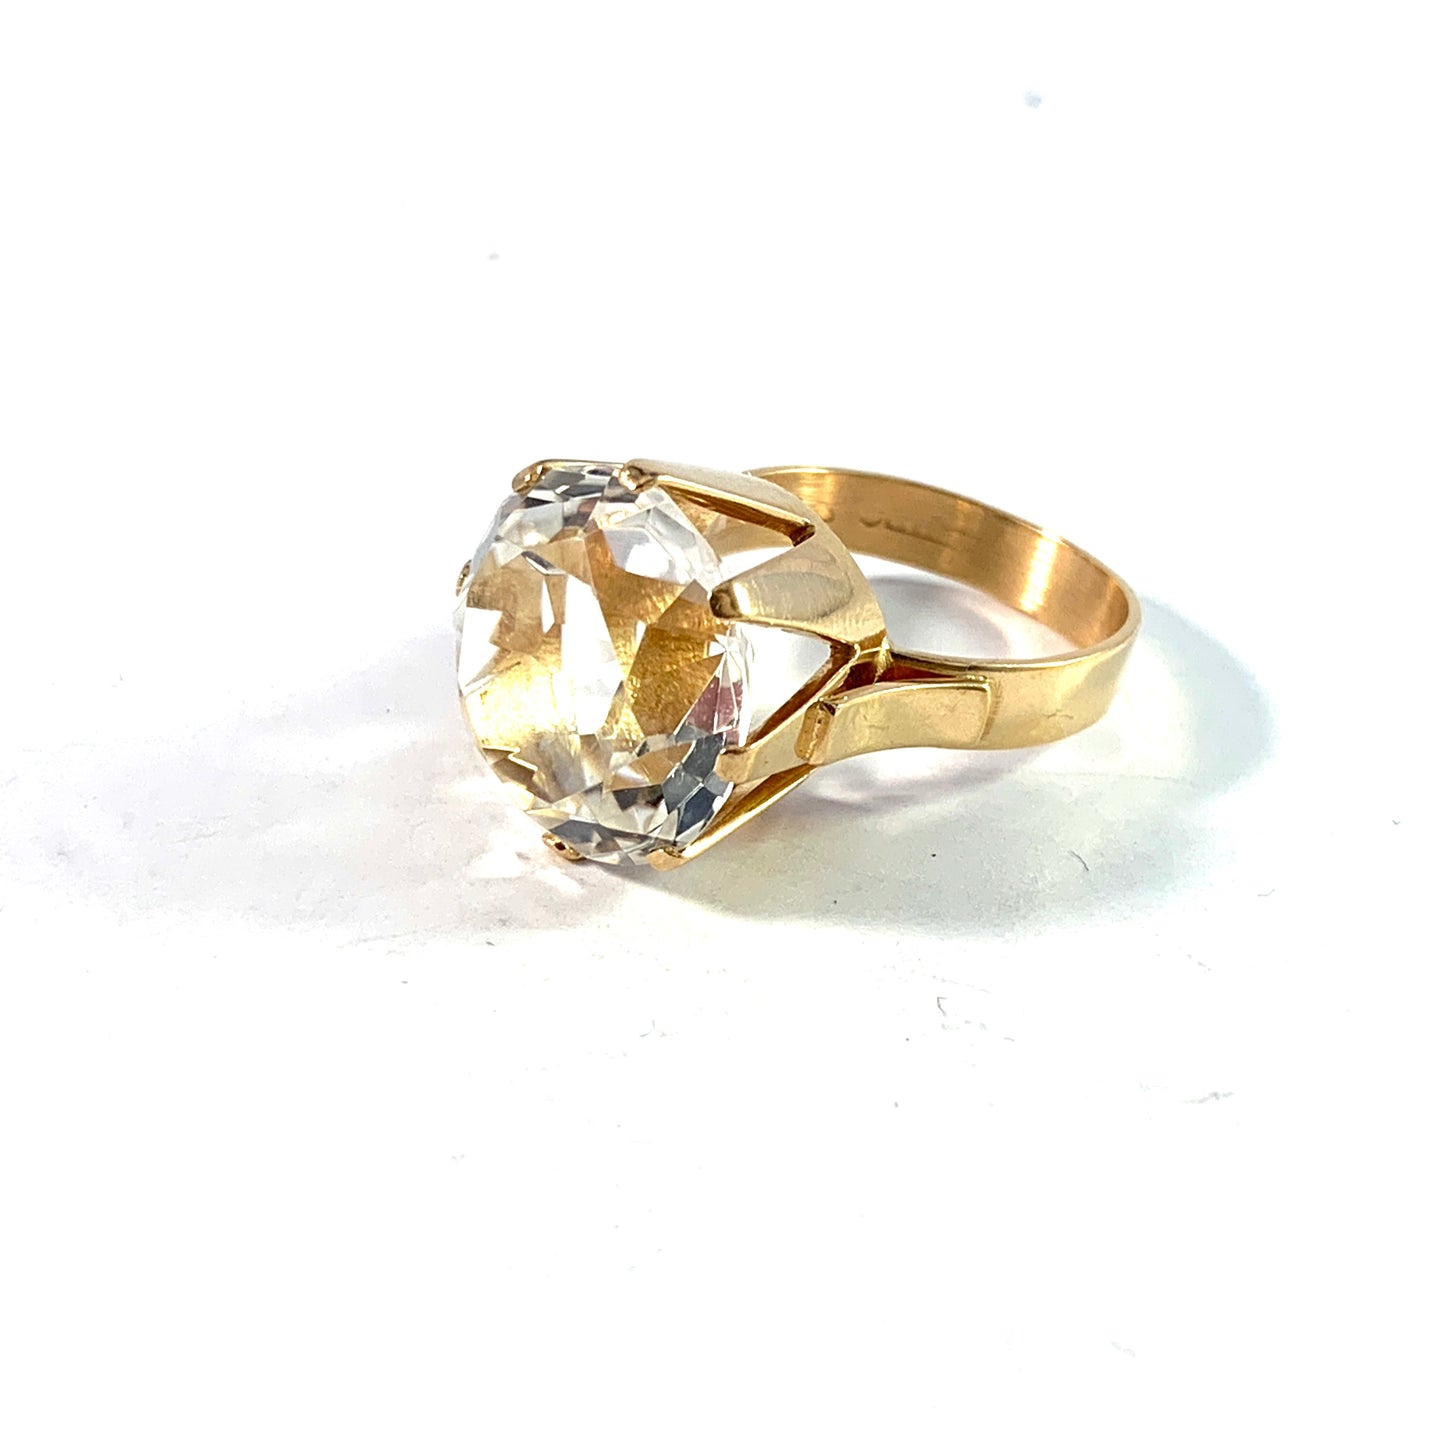 Styletta, Sweden 1968. Vintage 18k Gold Rock Crystal Ring.